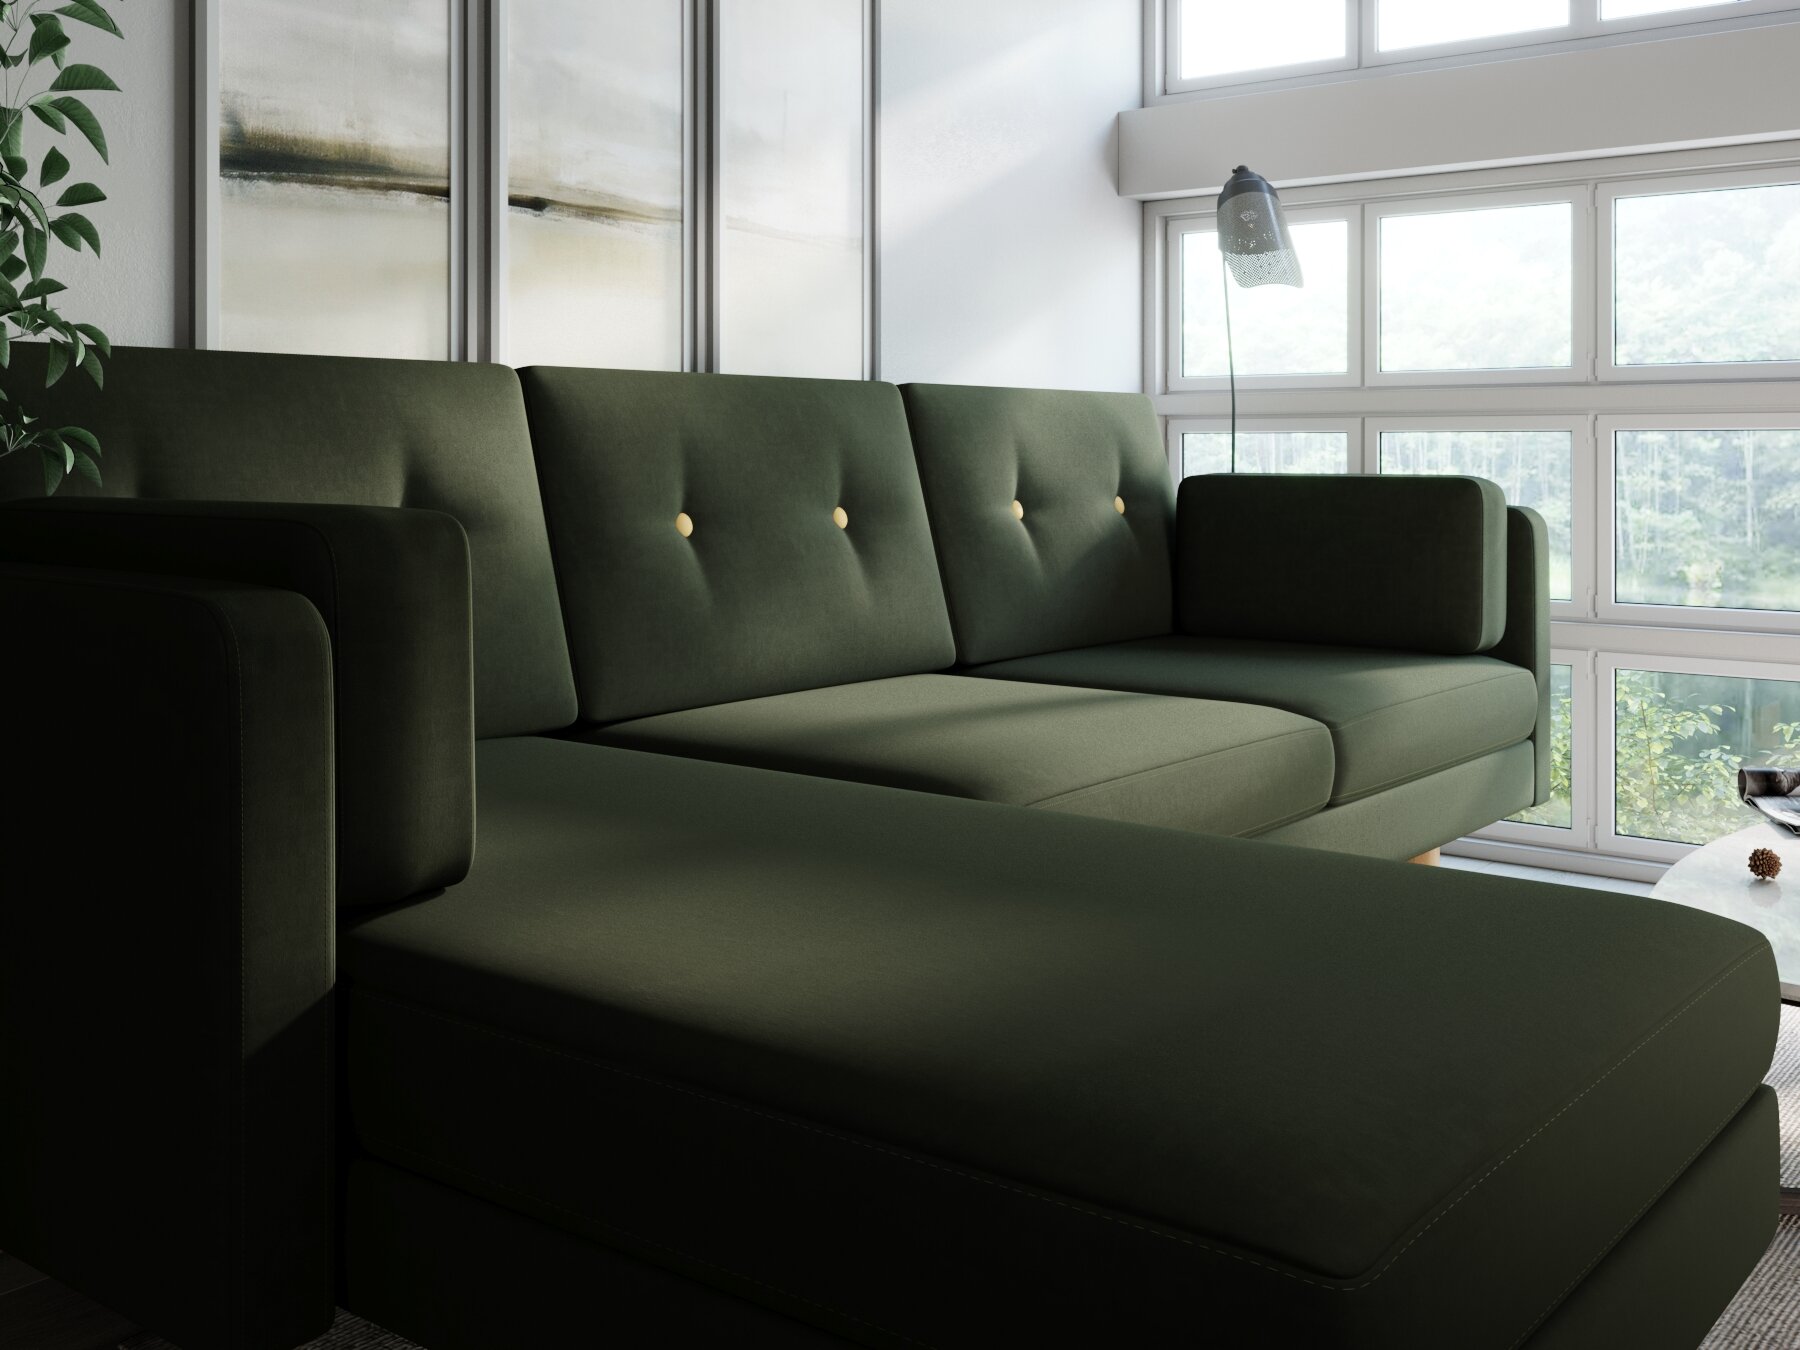 Угловой диван ингвар-у правый, зеленый, велюр, массив дерева, офисный, для кафе и бара, в гостиную, скандинавский лофт